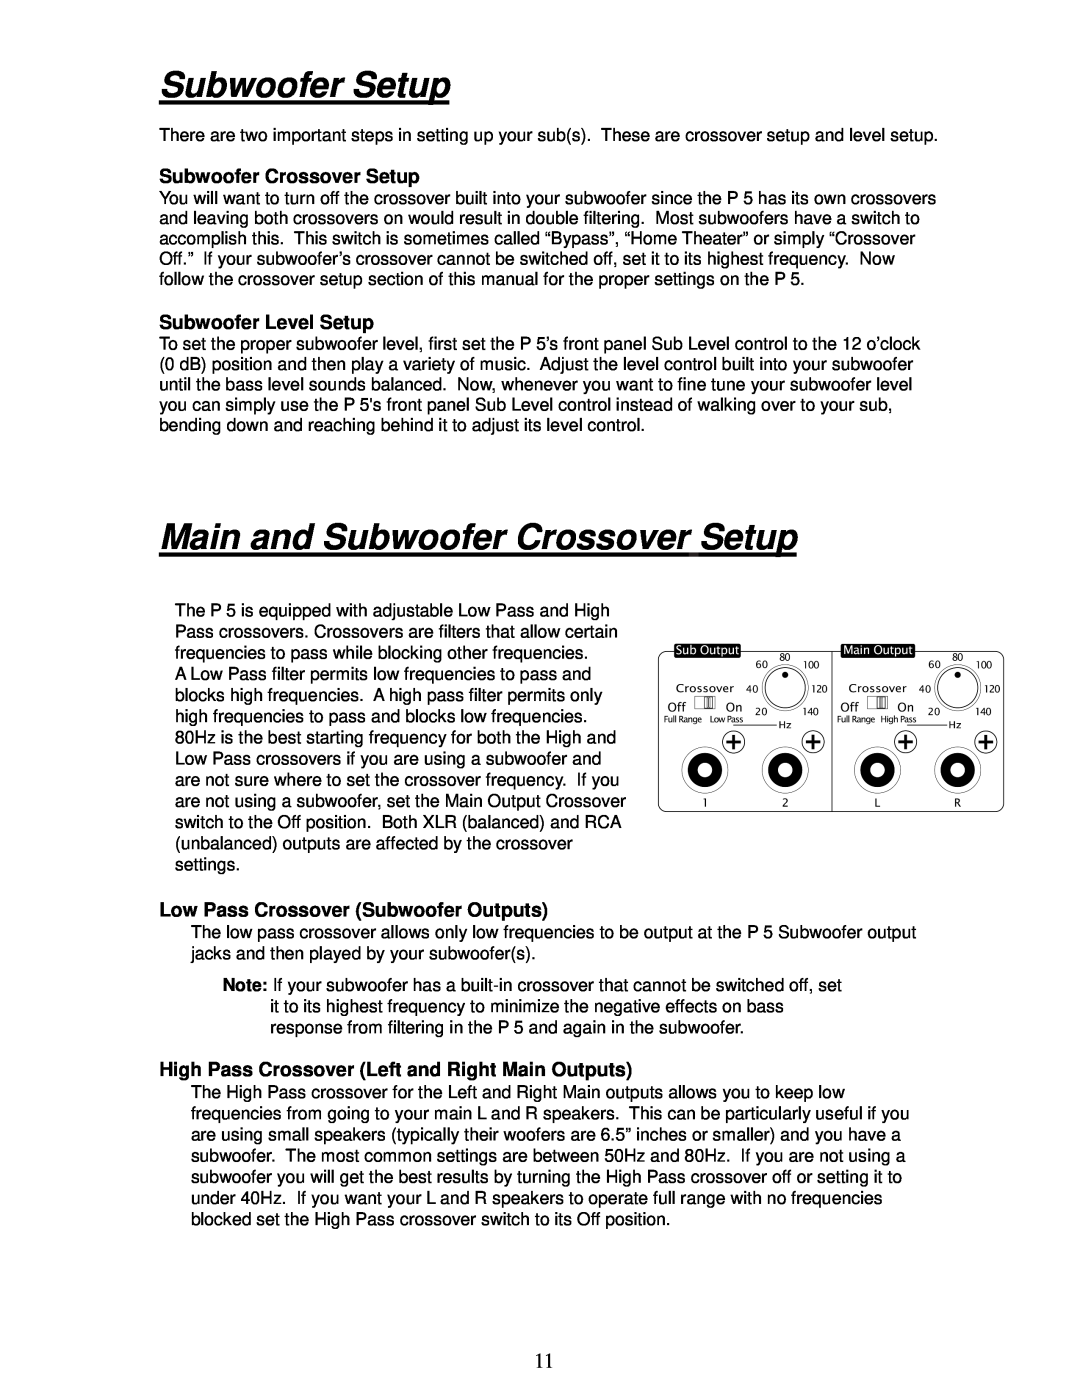 Parasound P 5 manual Subwoofer Setup, Main and Subwoofer Crossover Setup, Subwoofer Level Setup 